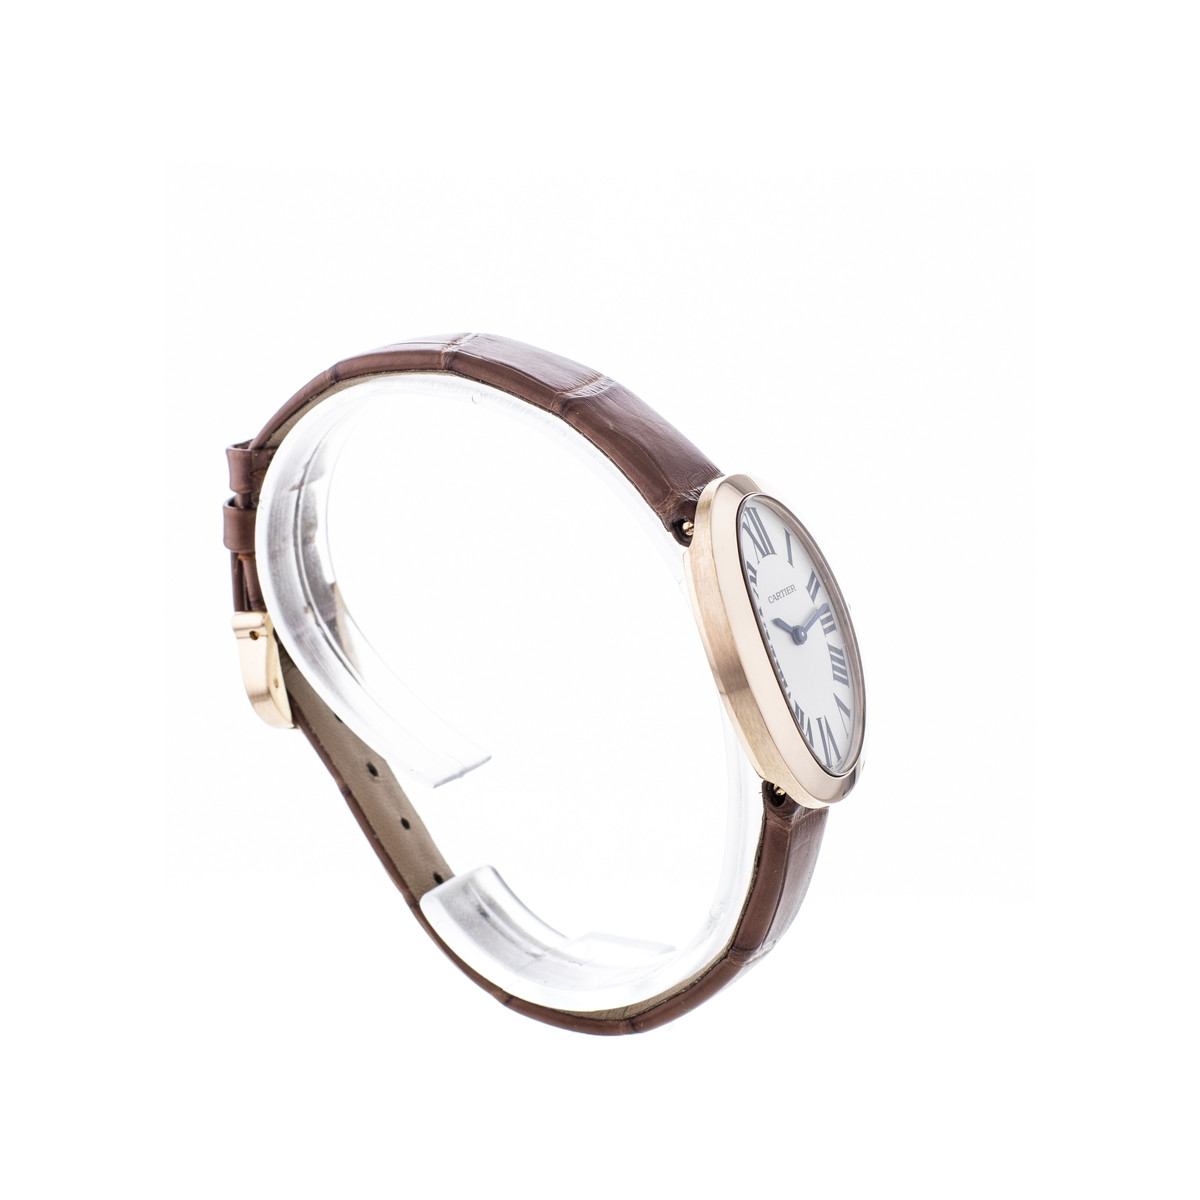 Montre d'occasion Cartier Baignoire femme or rose 750 bracelet cuir marron - vue 4